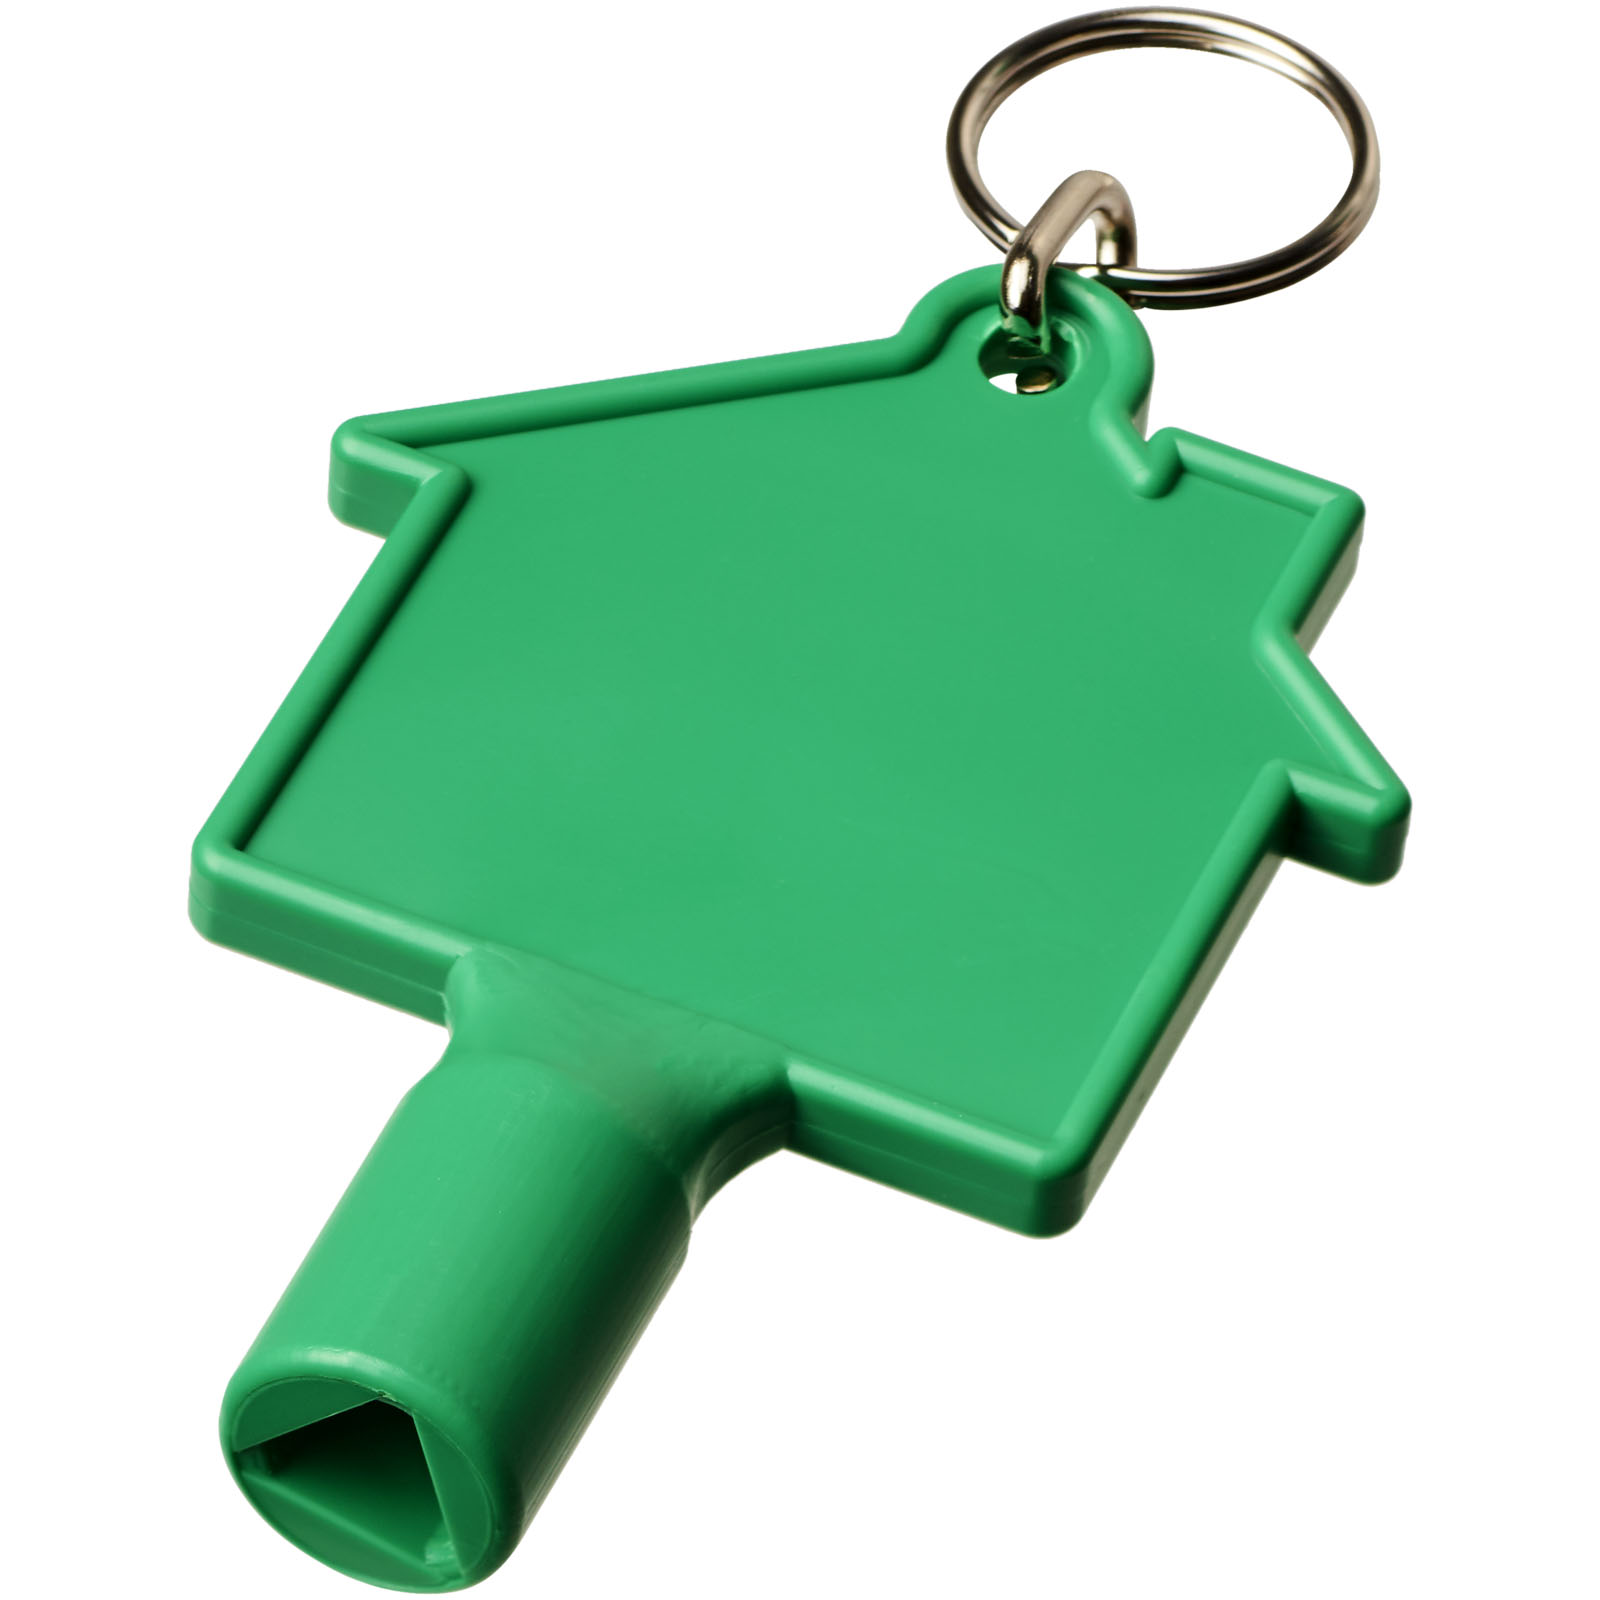 Porte-clés publicitaires - Clé utilitaire Maximilian en forme de maison avec porte-clés 